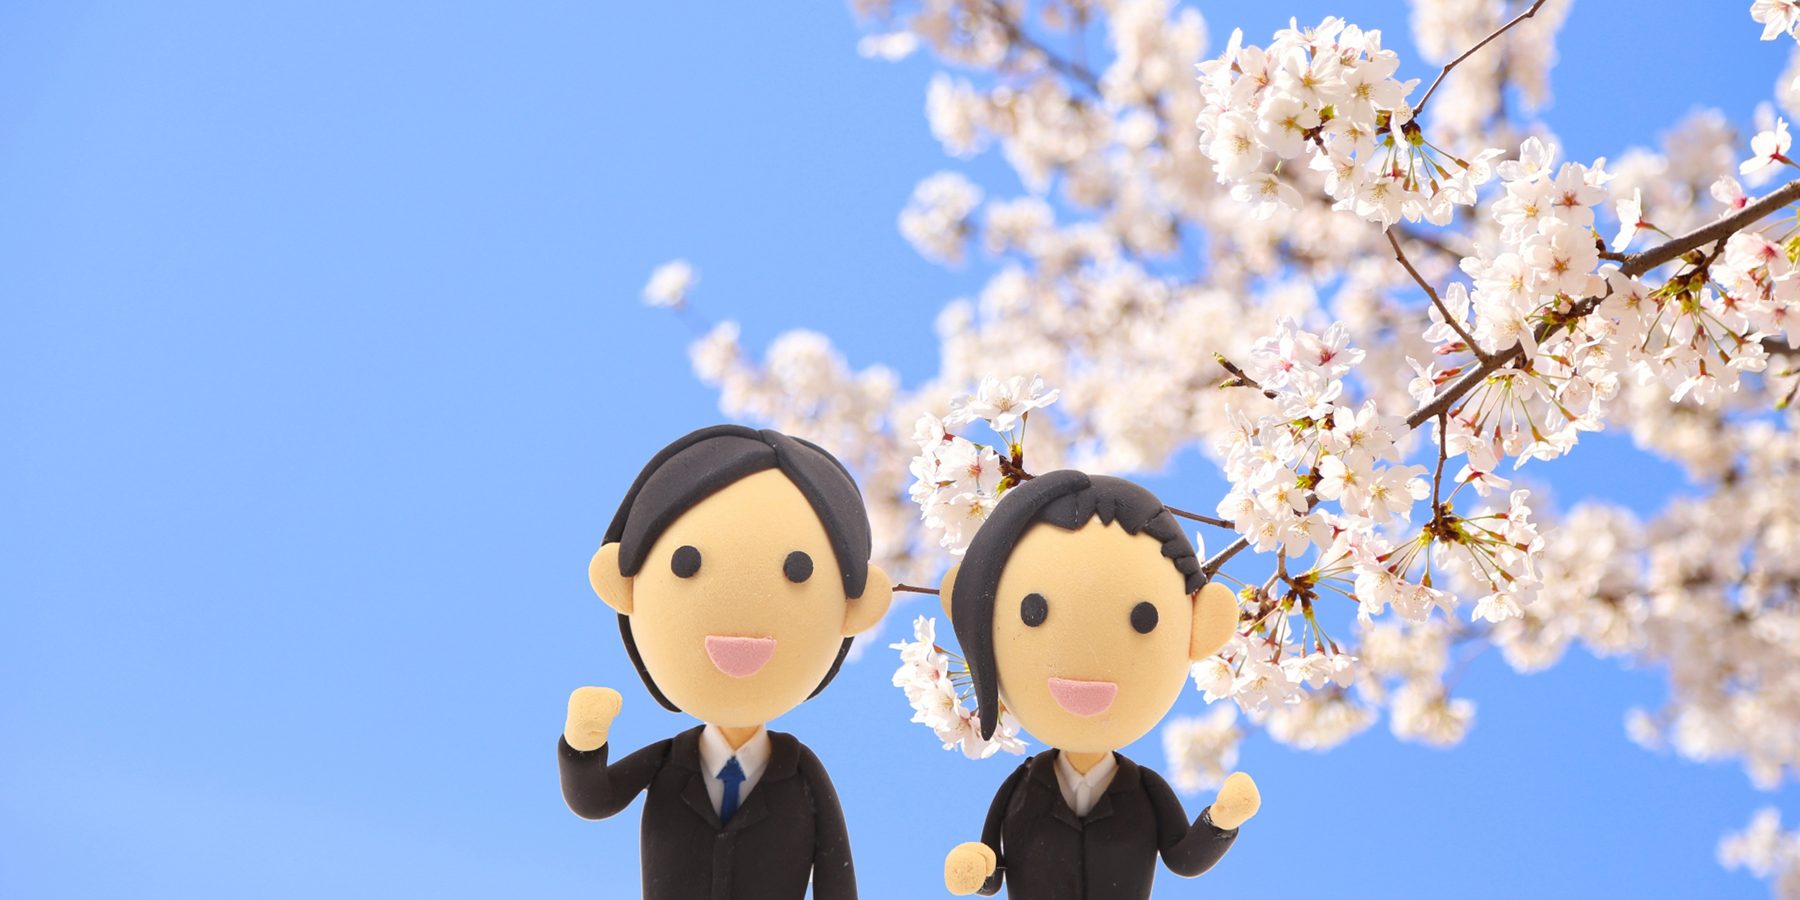 桜の樹の下の就活生人形